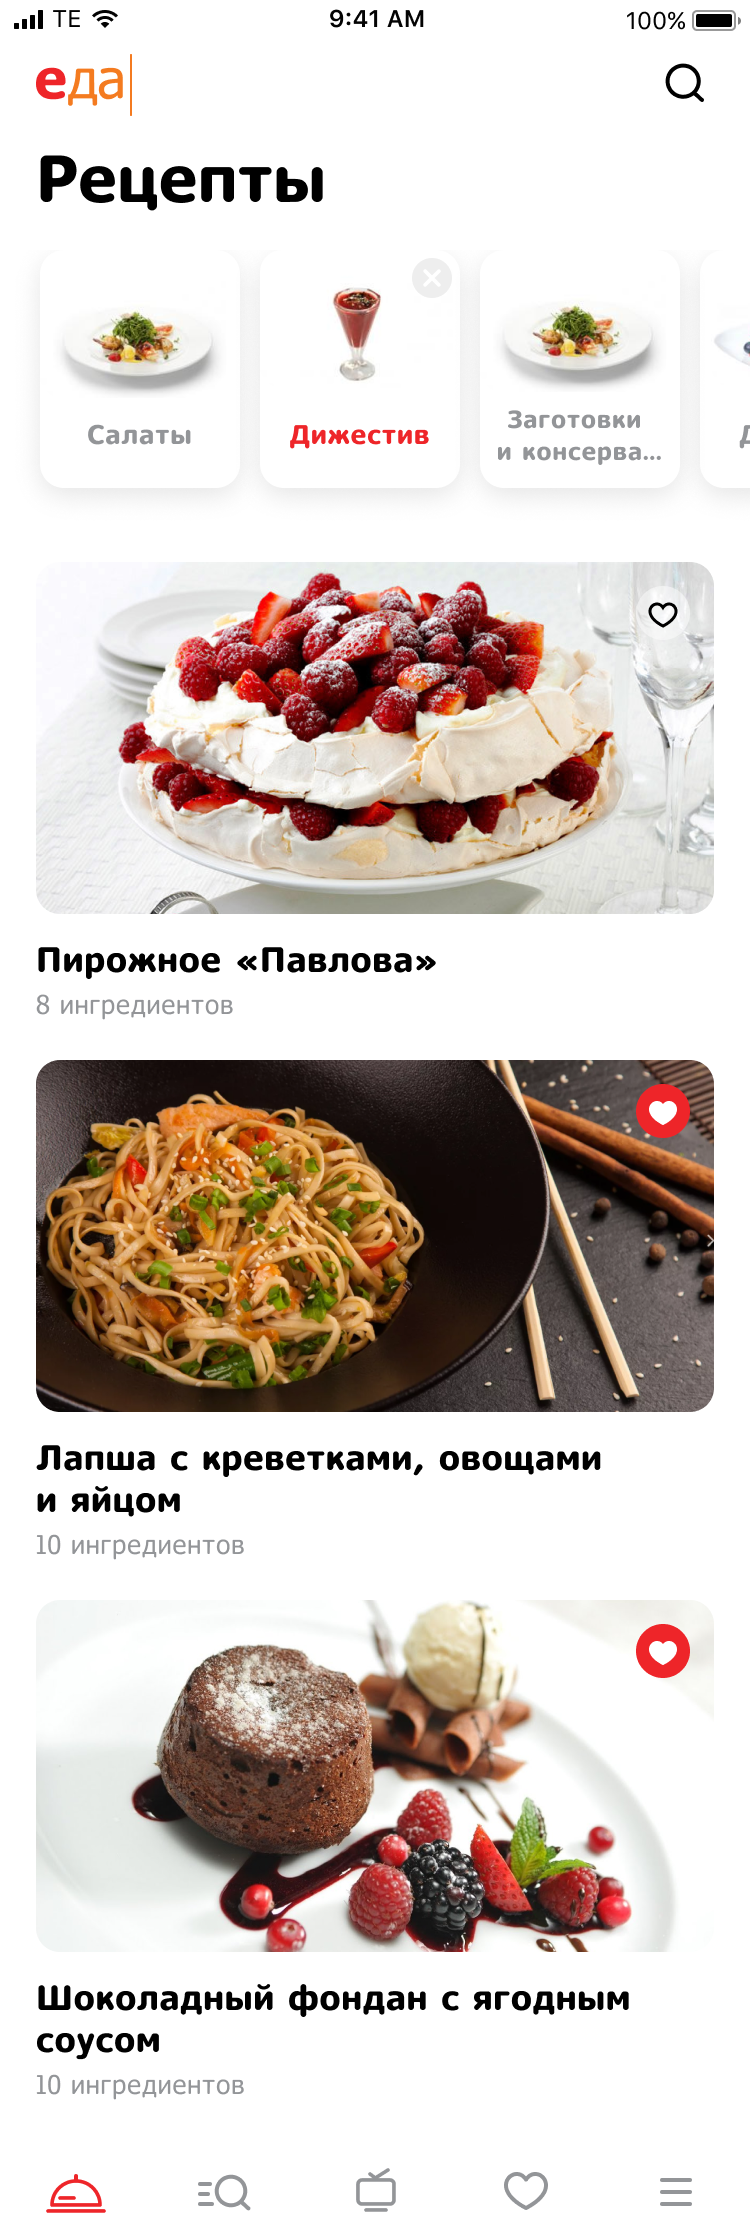 Мобильное приложение Телеканала «Еда»